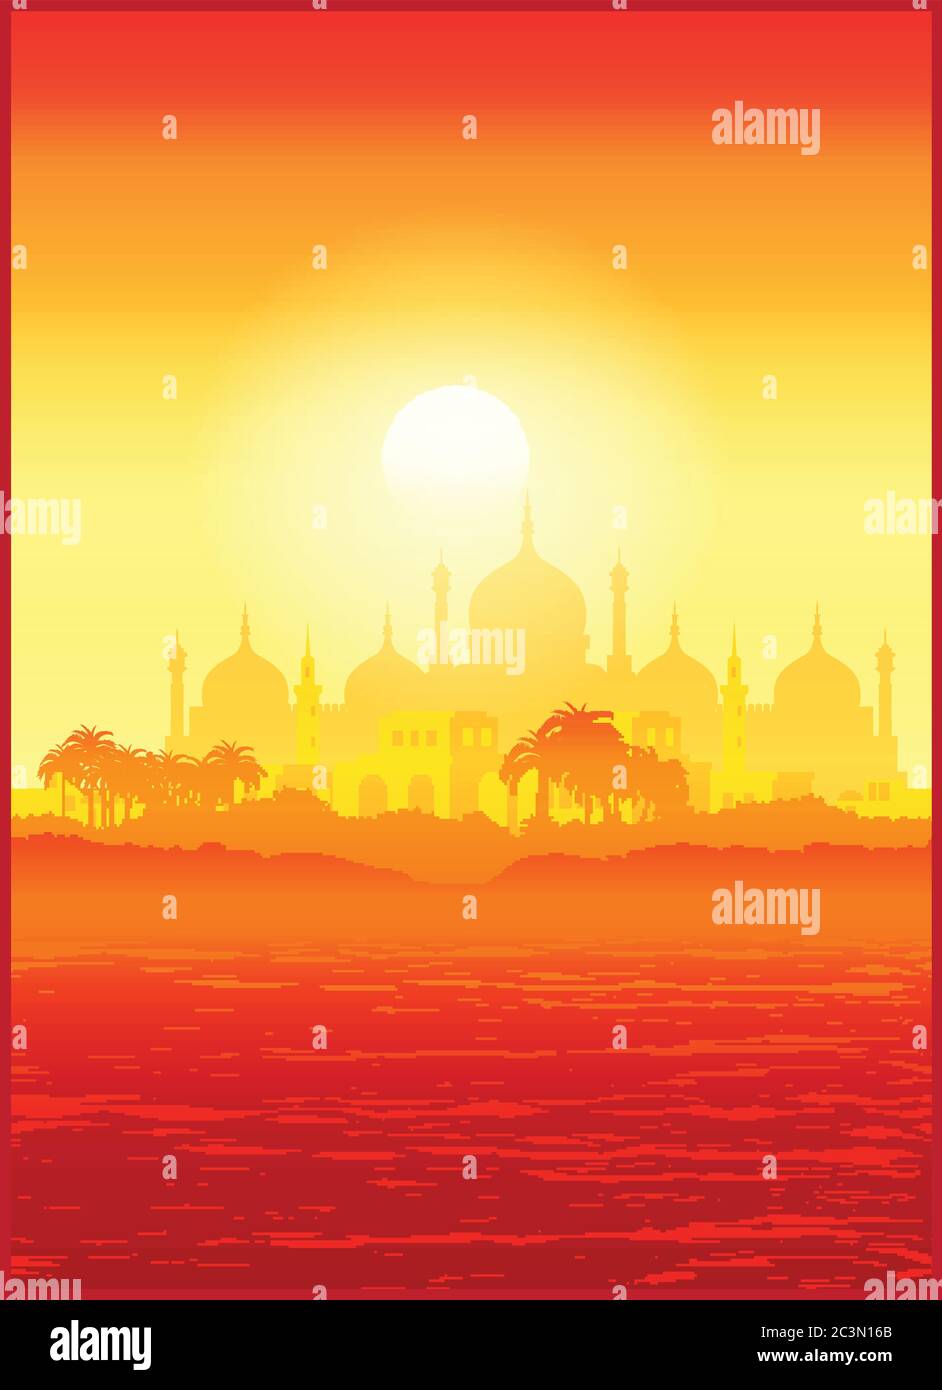 Illustrazione vettoriale stilizzata della vecchia città del Medio Oriente sulle rive negli ultimi raggi del sole. Senza giunture in orizzontale, se necessario Illustrazione Vettoriale